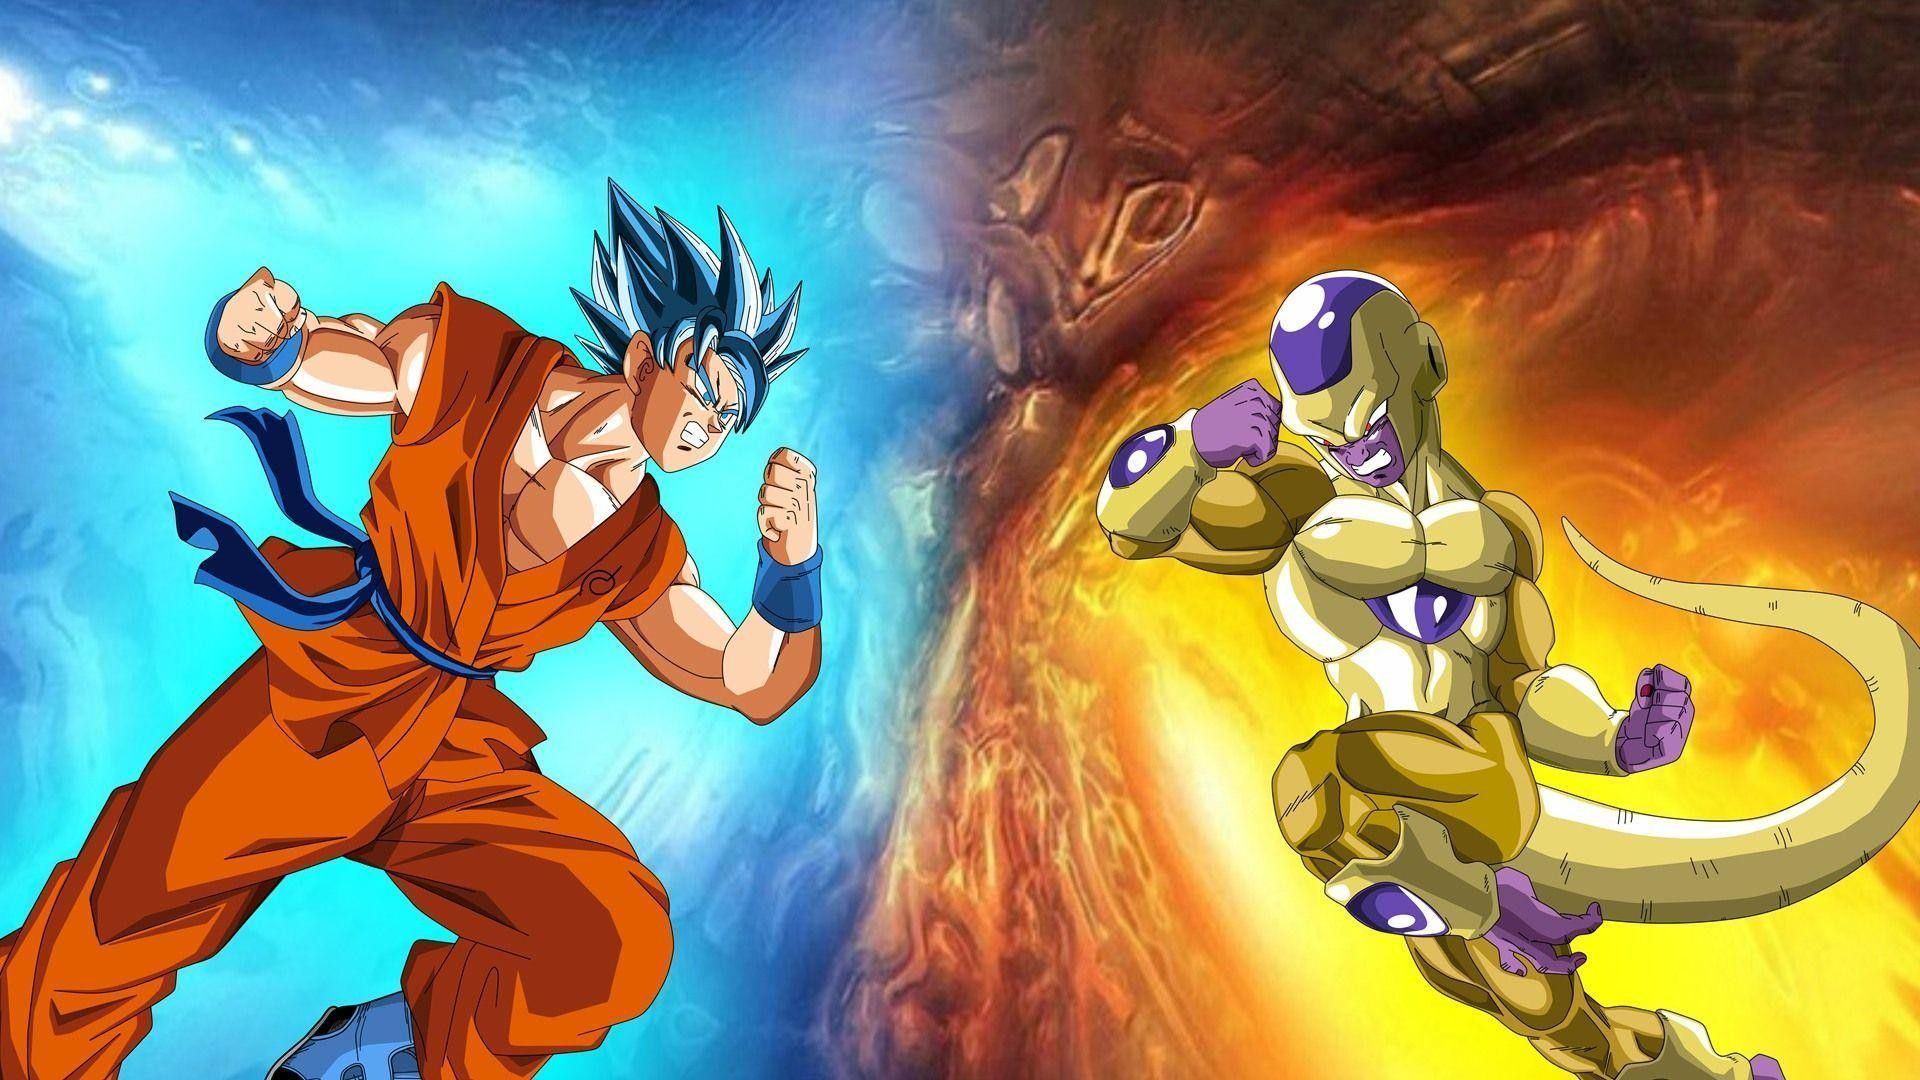 Gold Frieza vs SSGSS Goku no aura 1920x1080  Goku Goku vs frieza Frieza